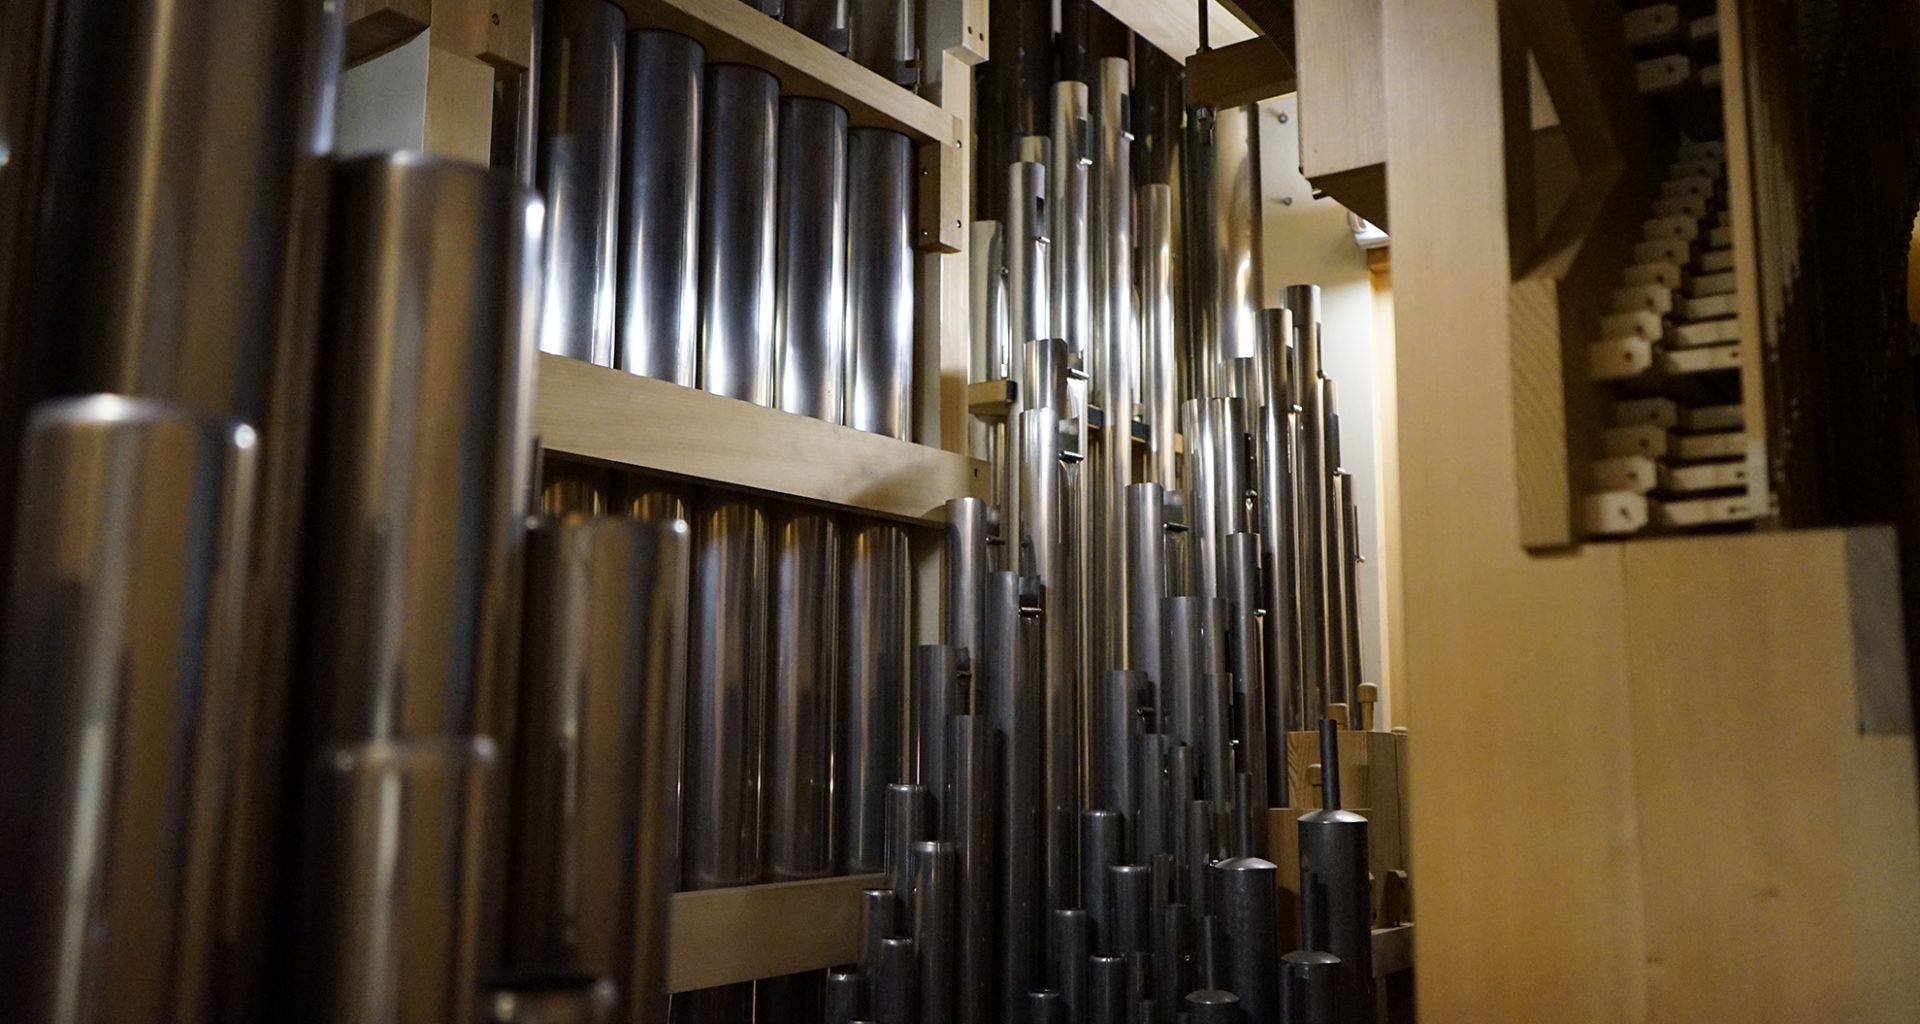 Orgel der Kirche "Heiligste Dreifaltigkeit" in Fraulautern, Saarland von innen